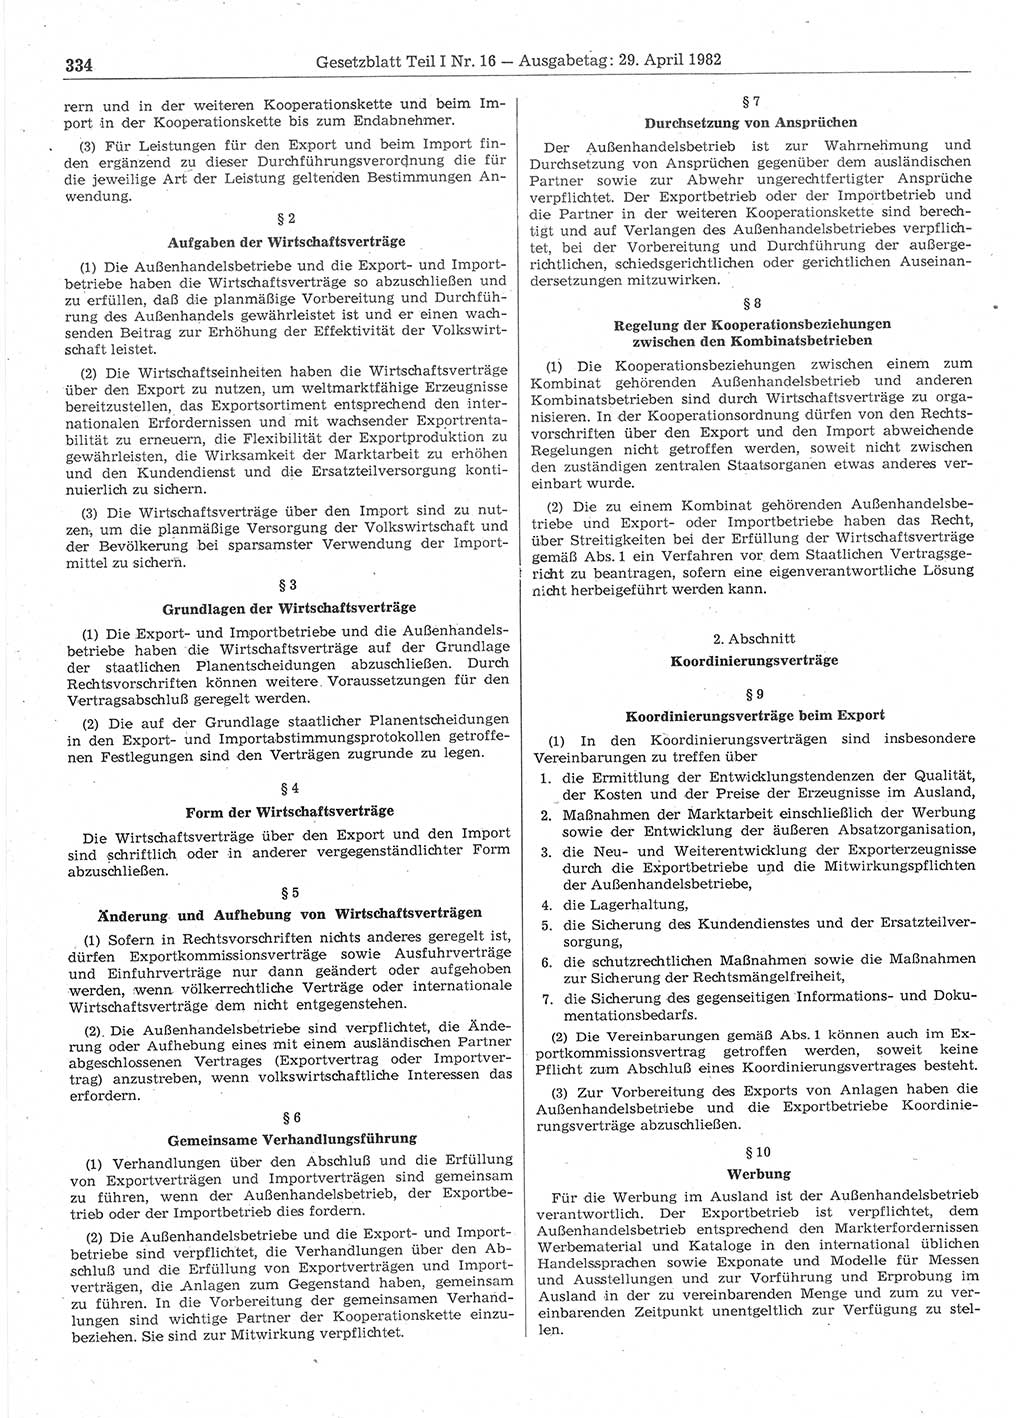 Gesetzblatt (GBl.) der Deutschen Demokratischen Republik (DDR) Teil Ⅰ 1982, Seite 334 (GBl. DDR Ⅰ 1982, S. 334)